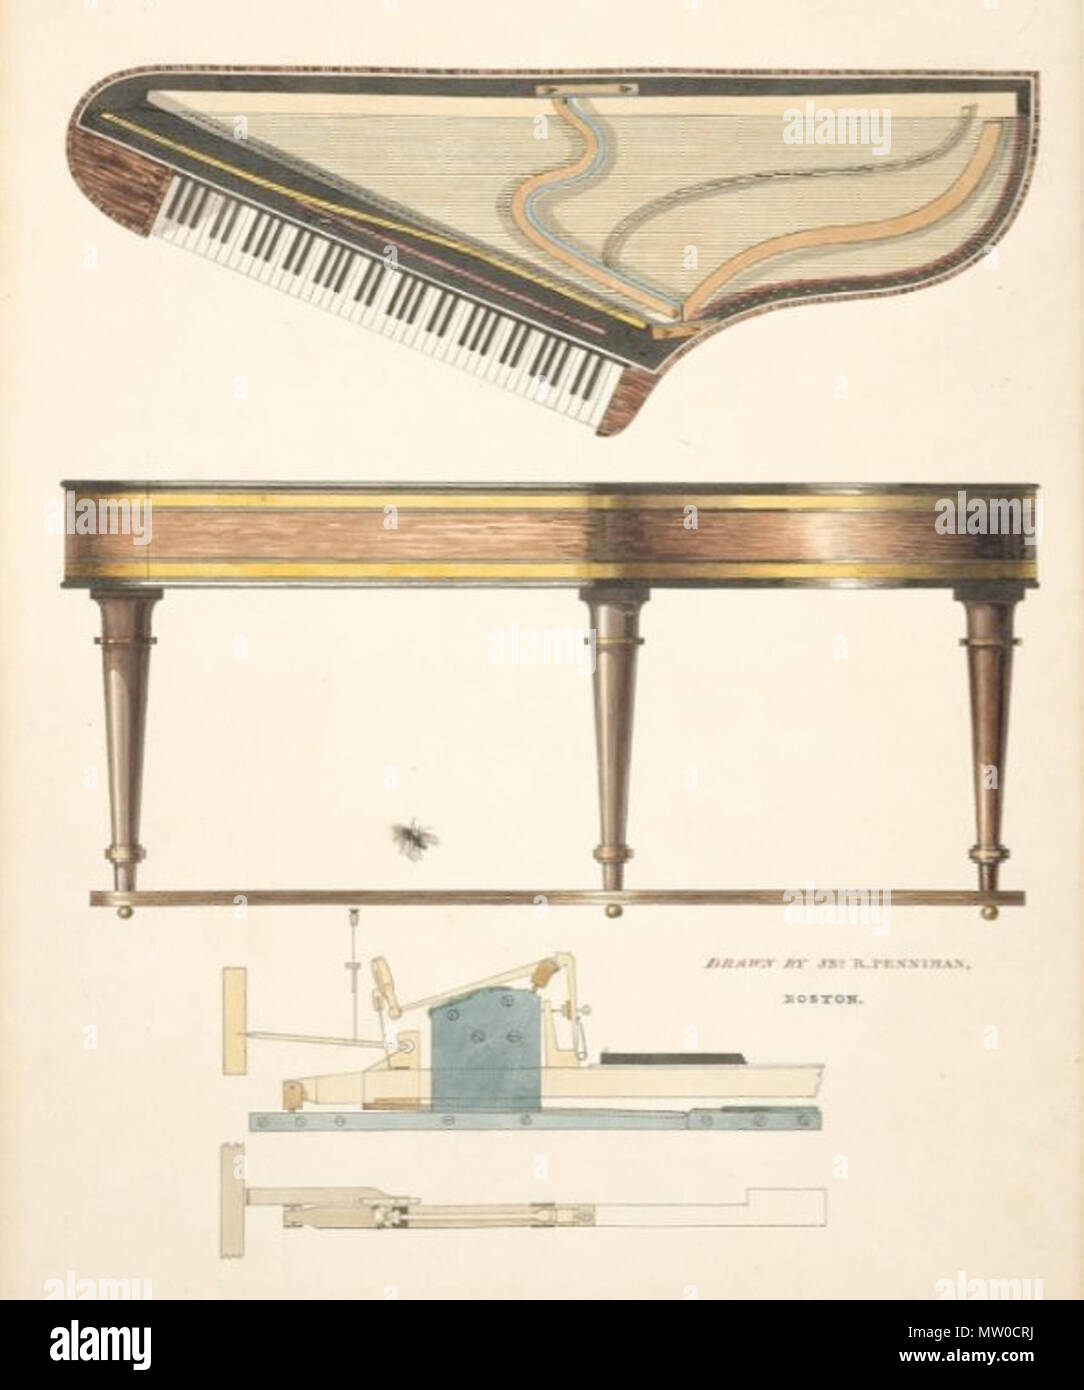 Englisch: Piano in der Form eines Bentside Spinett. Ungefähr 1830. Von John  ritto Penniman, amerikanischen, 1782-1841. Boston, Massachusetts, USA.  Gerahmt: 58,4 x 47,6 cm (23 x 18 3/4 in.). Feder und